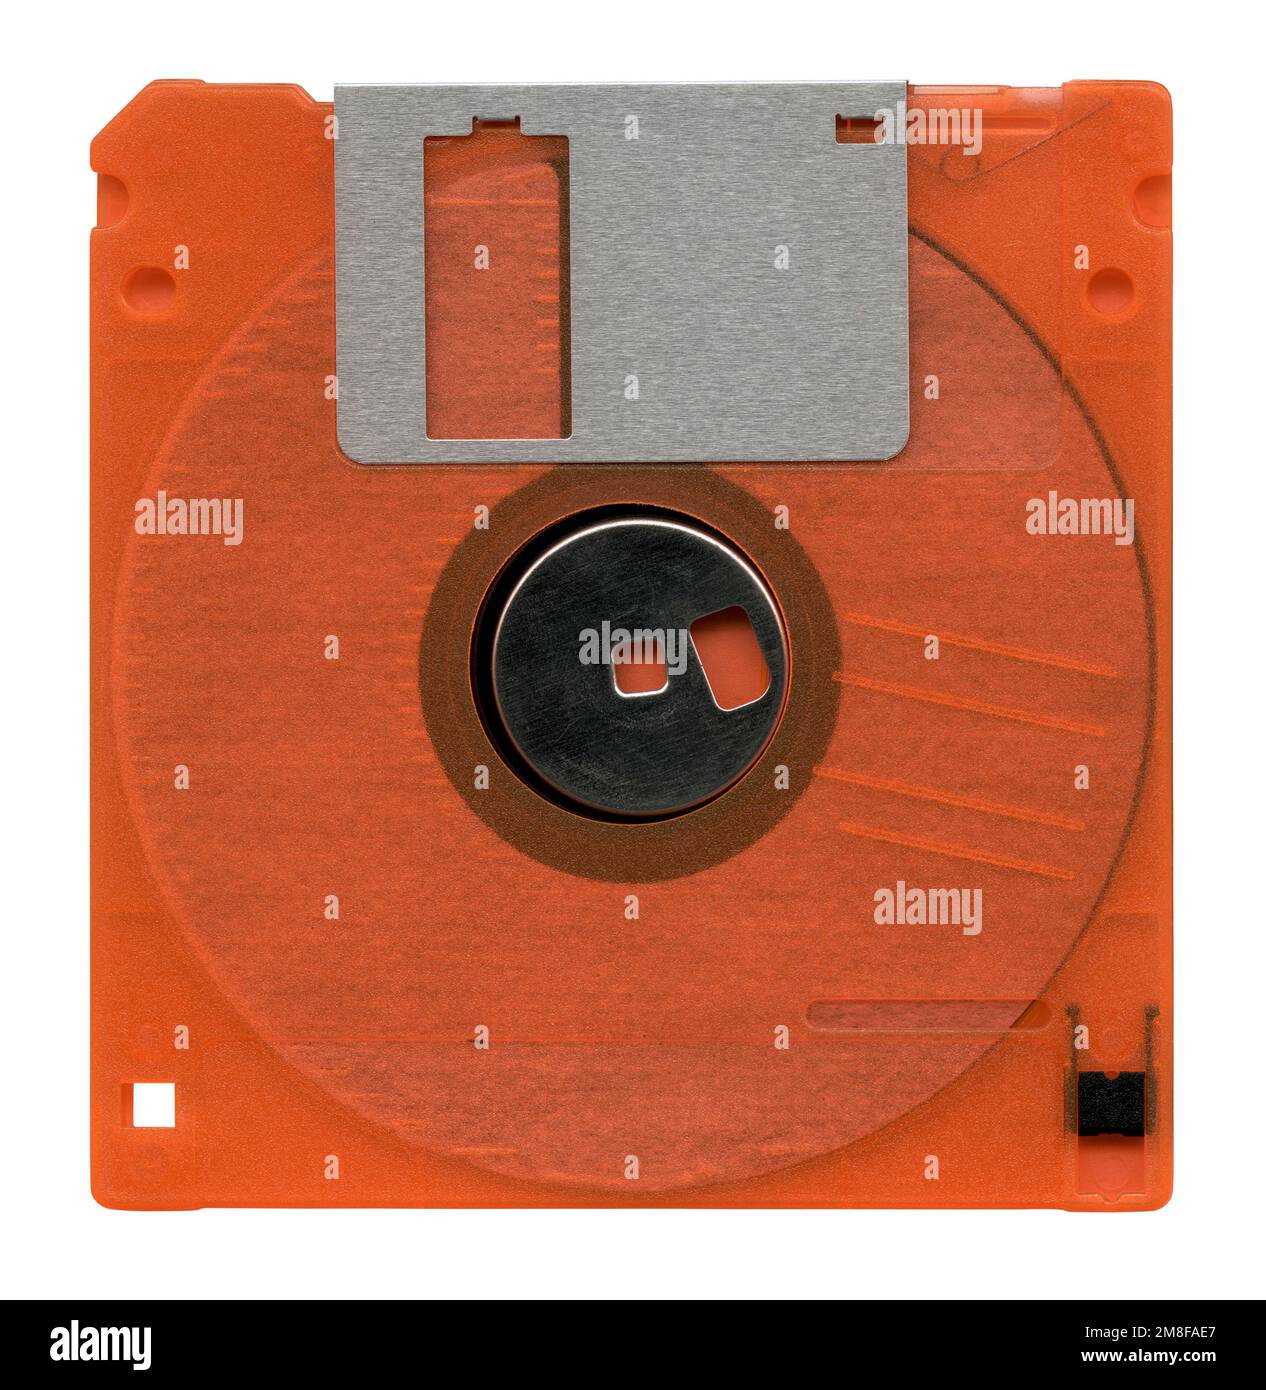 Orange floppy disk on white Stock Photo